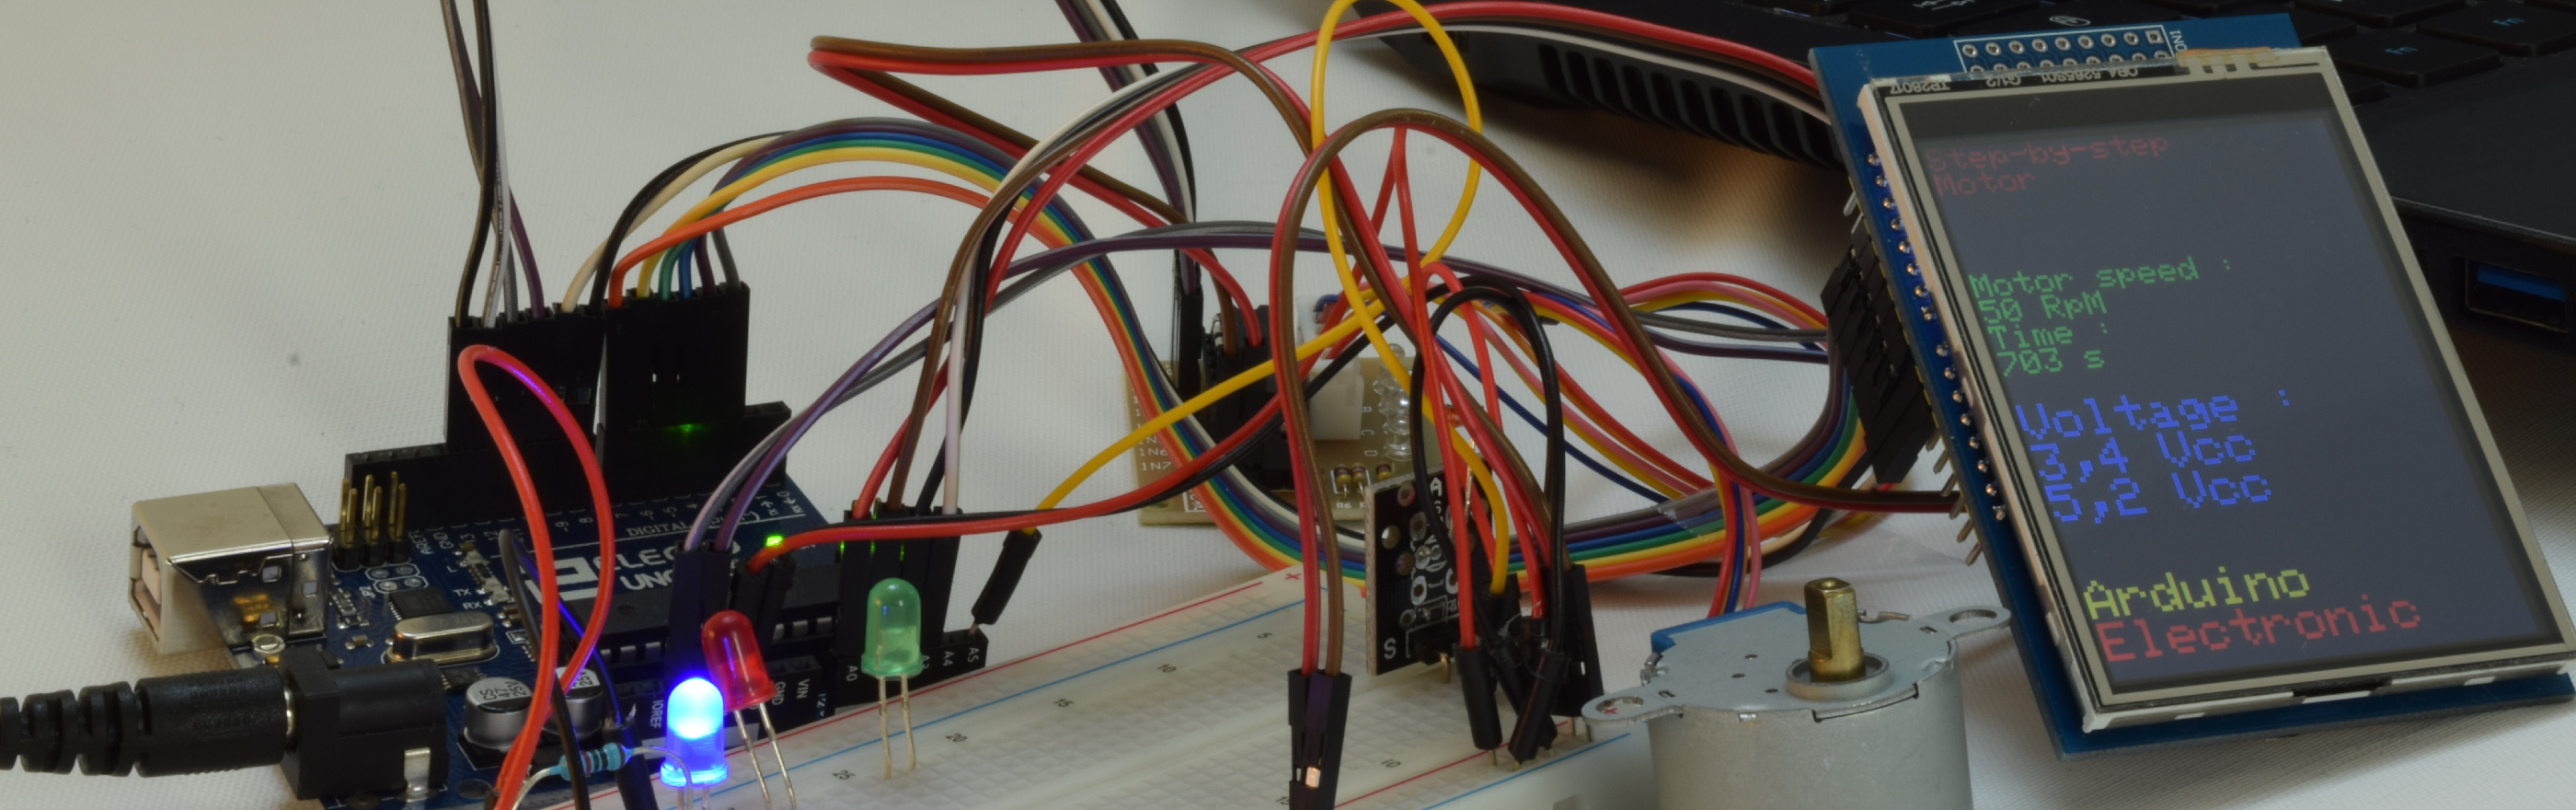 Arduino in der Praxis (Teil 1) – Bedienung des Displaymoduls   Elektronische Teile. Vertriebshändler und Onlineshop - Transfer Multisort  Elektronik